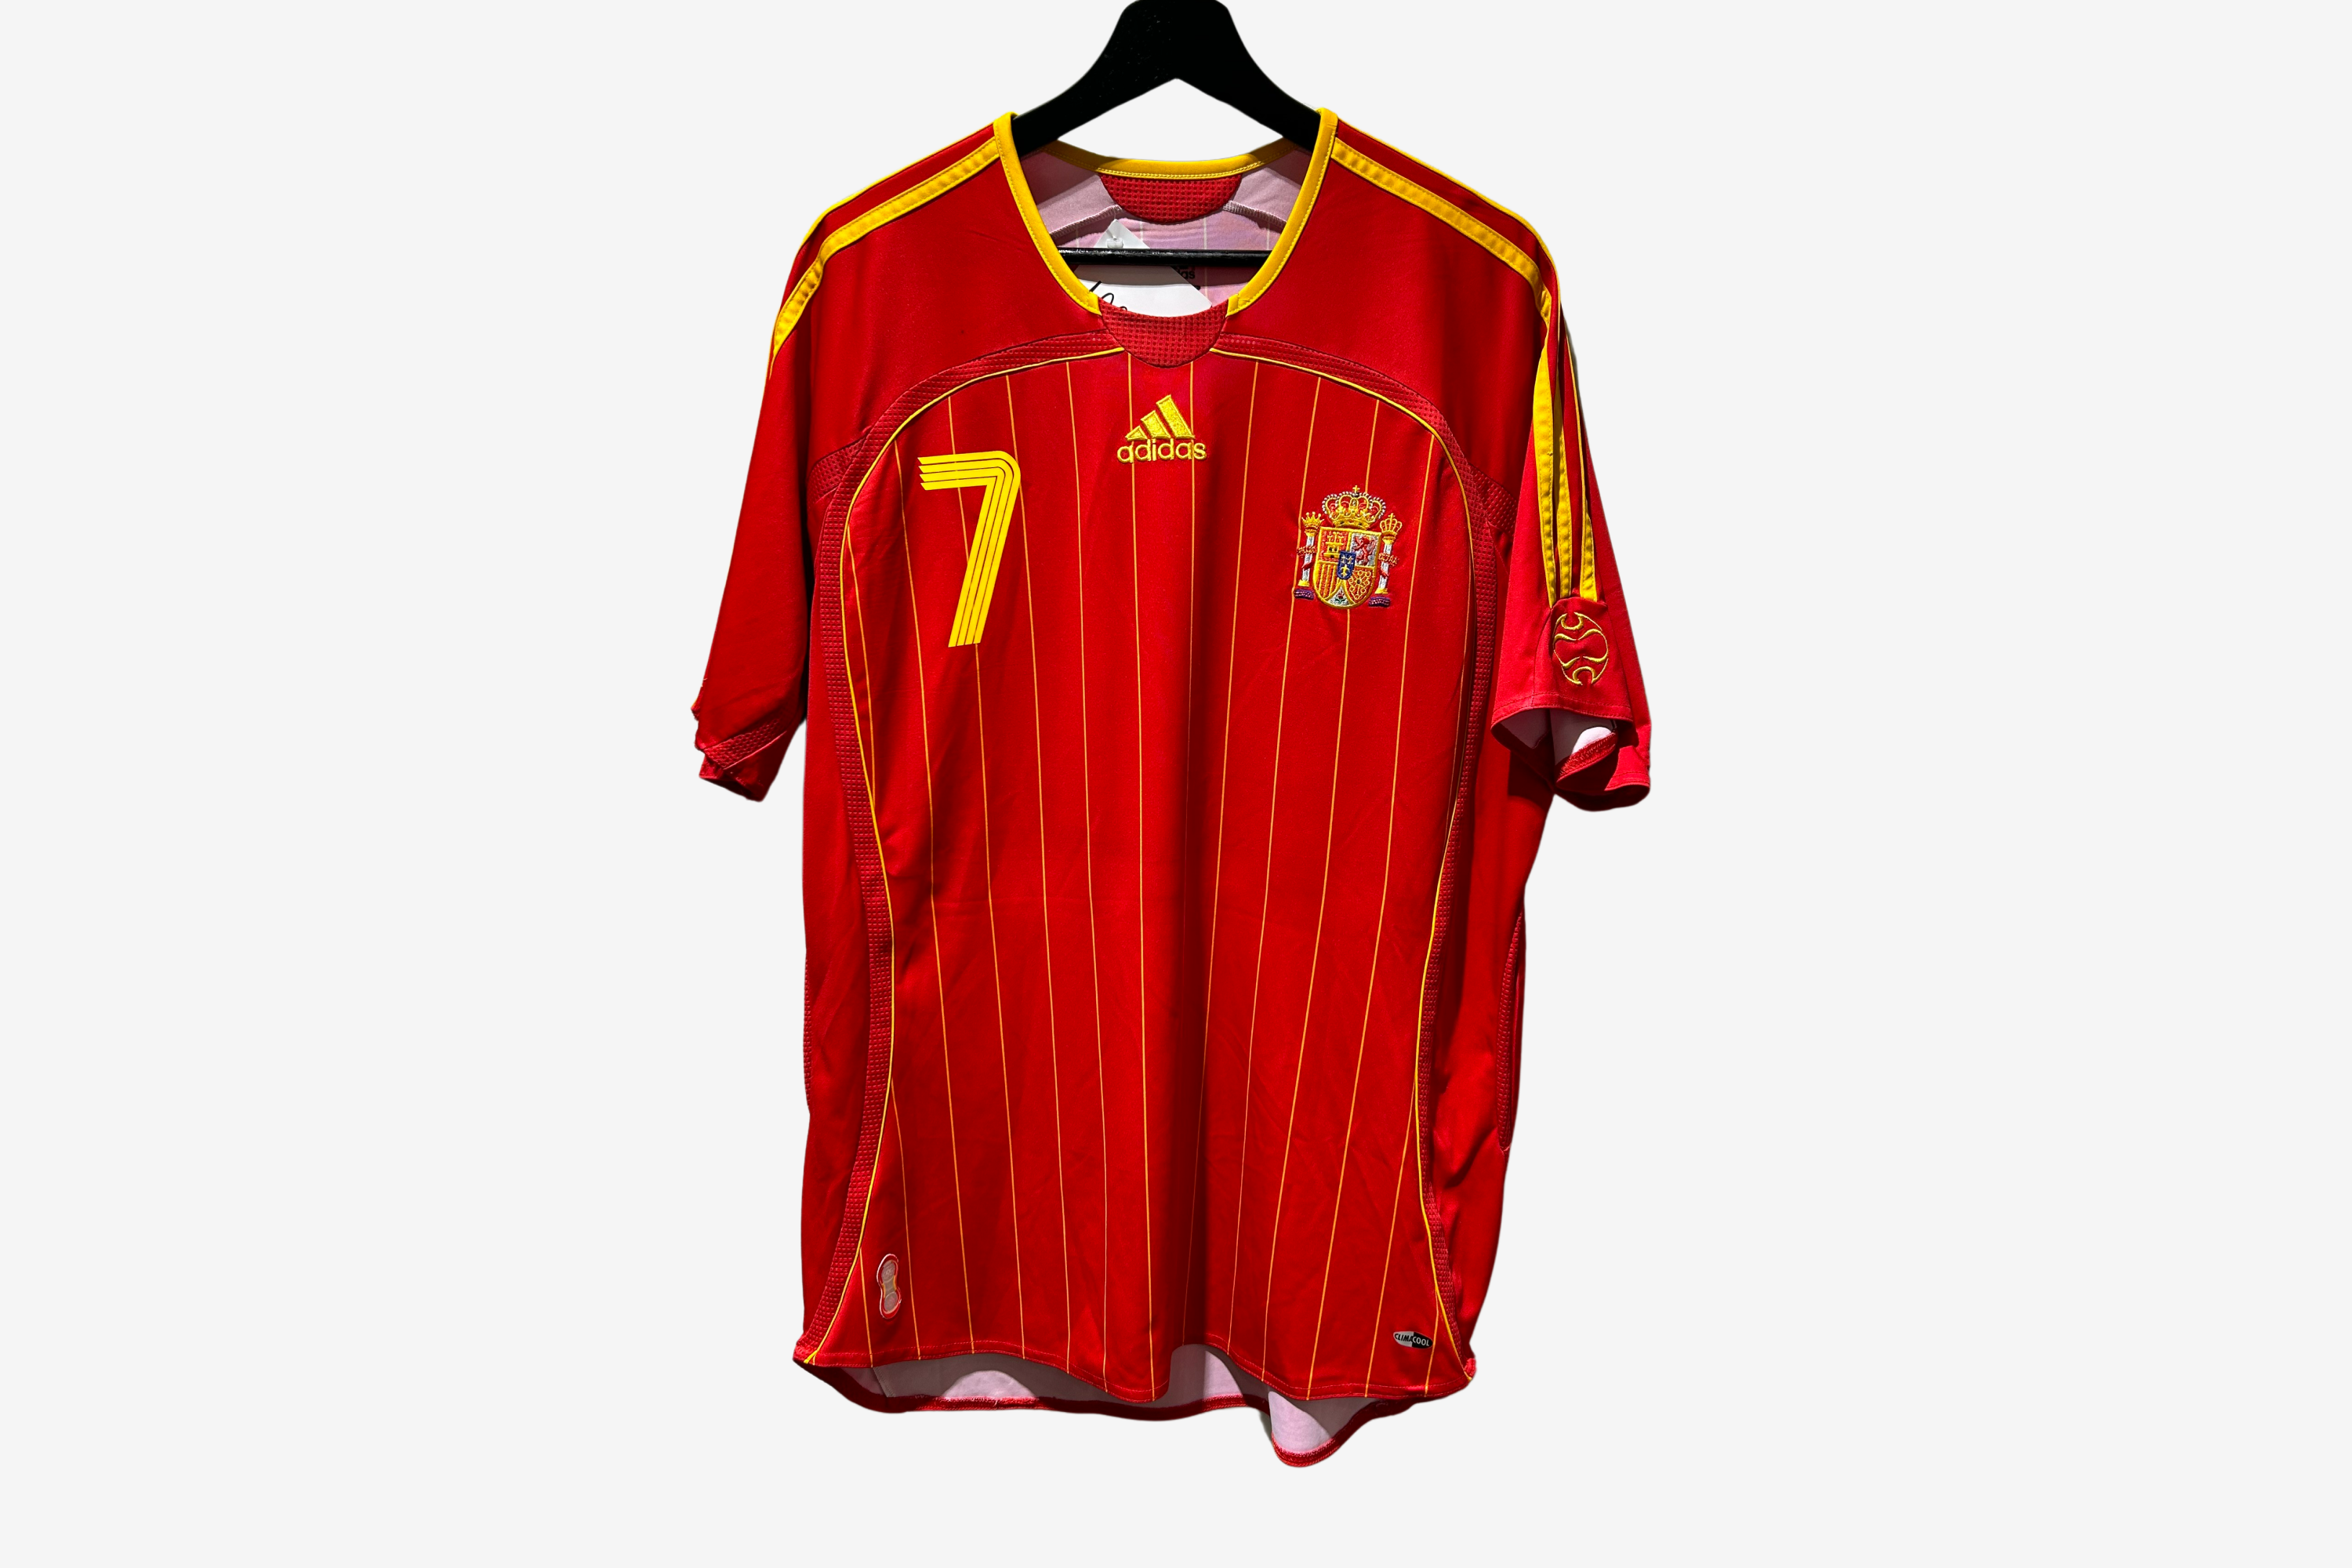 Adidas - Spain 2006 Home Football Shirt 'RAUL'